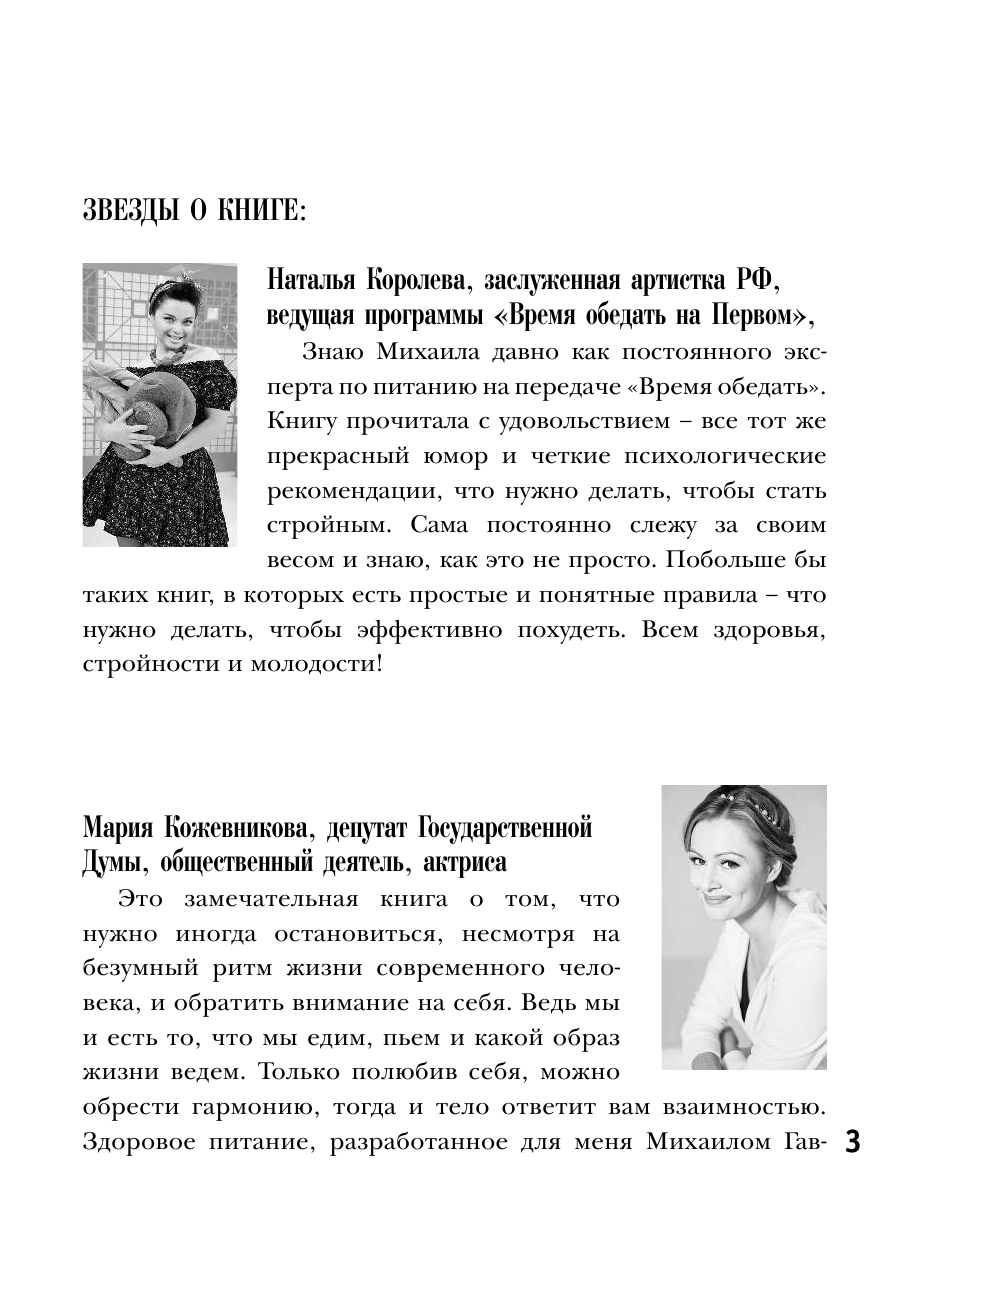 Гаврилов Михаил Алексеевич Pro жизнь без жира. Комплексная proграмма proтив ожирения - страница 3